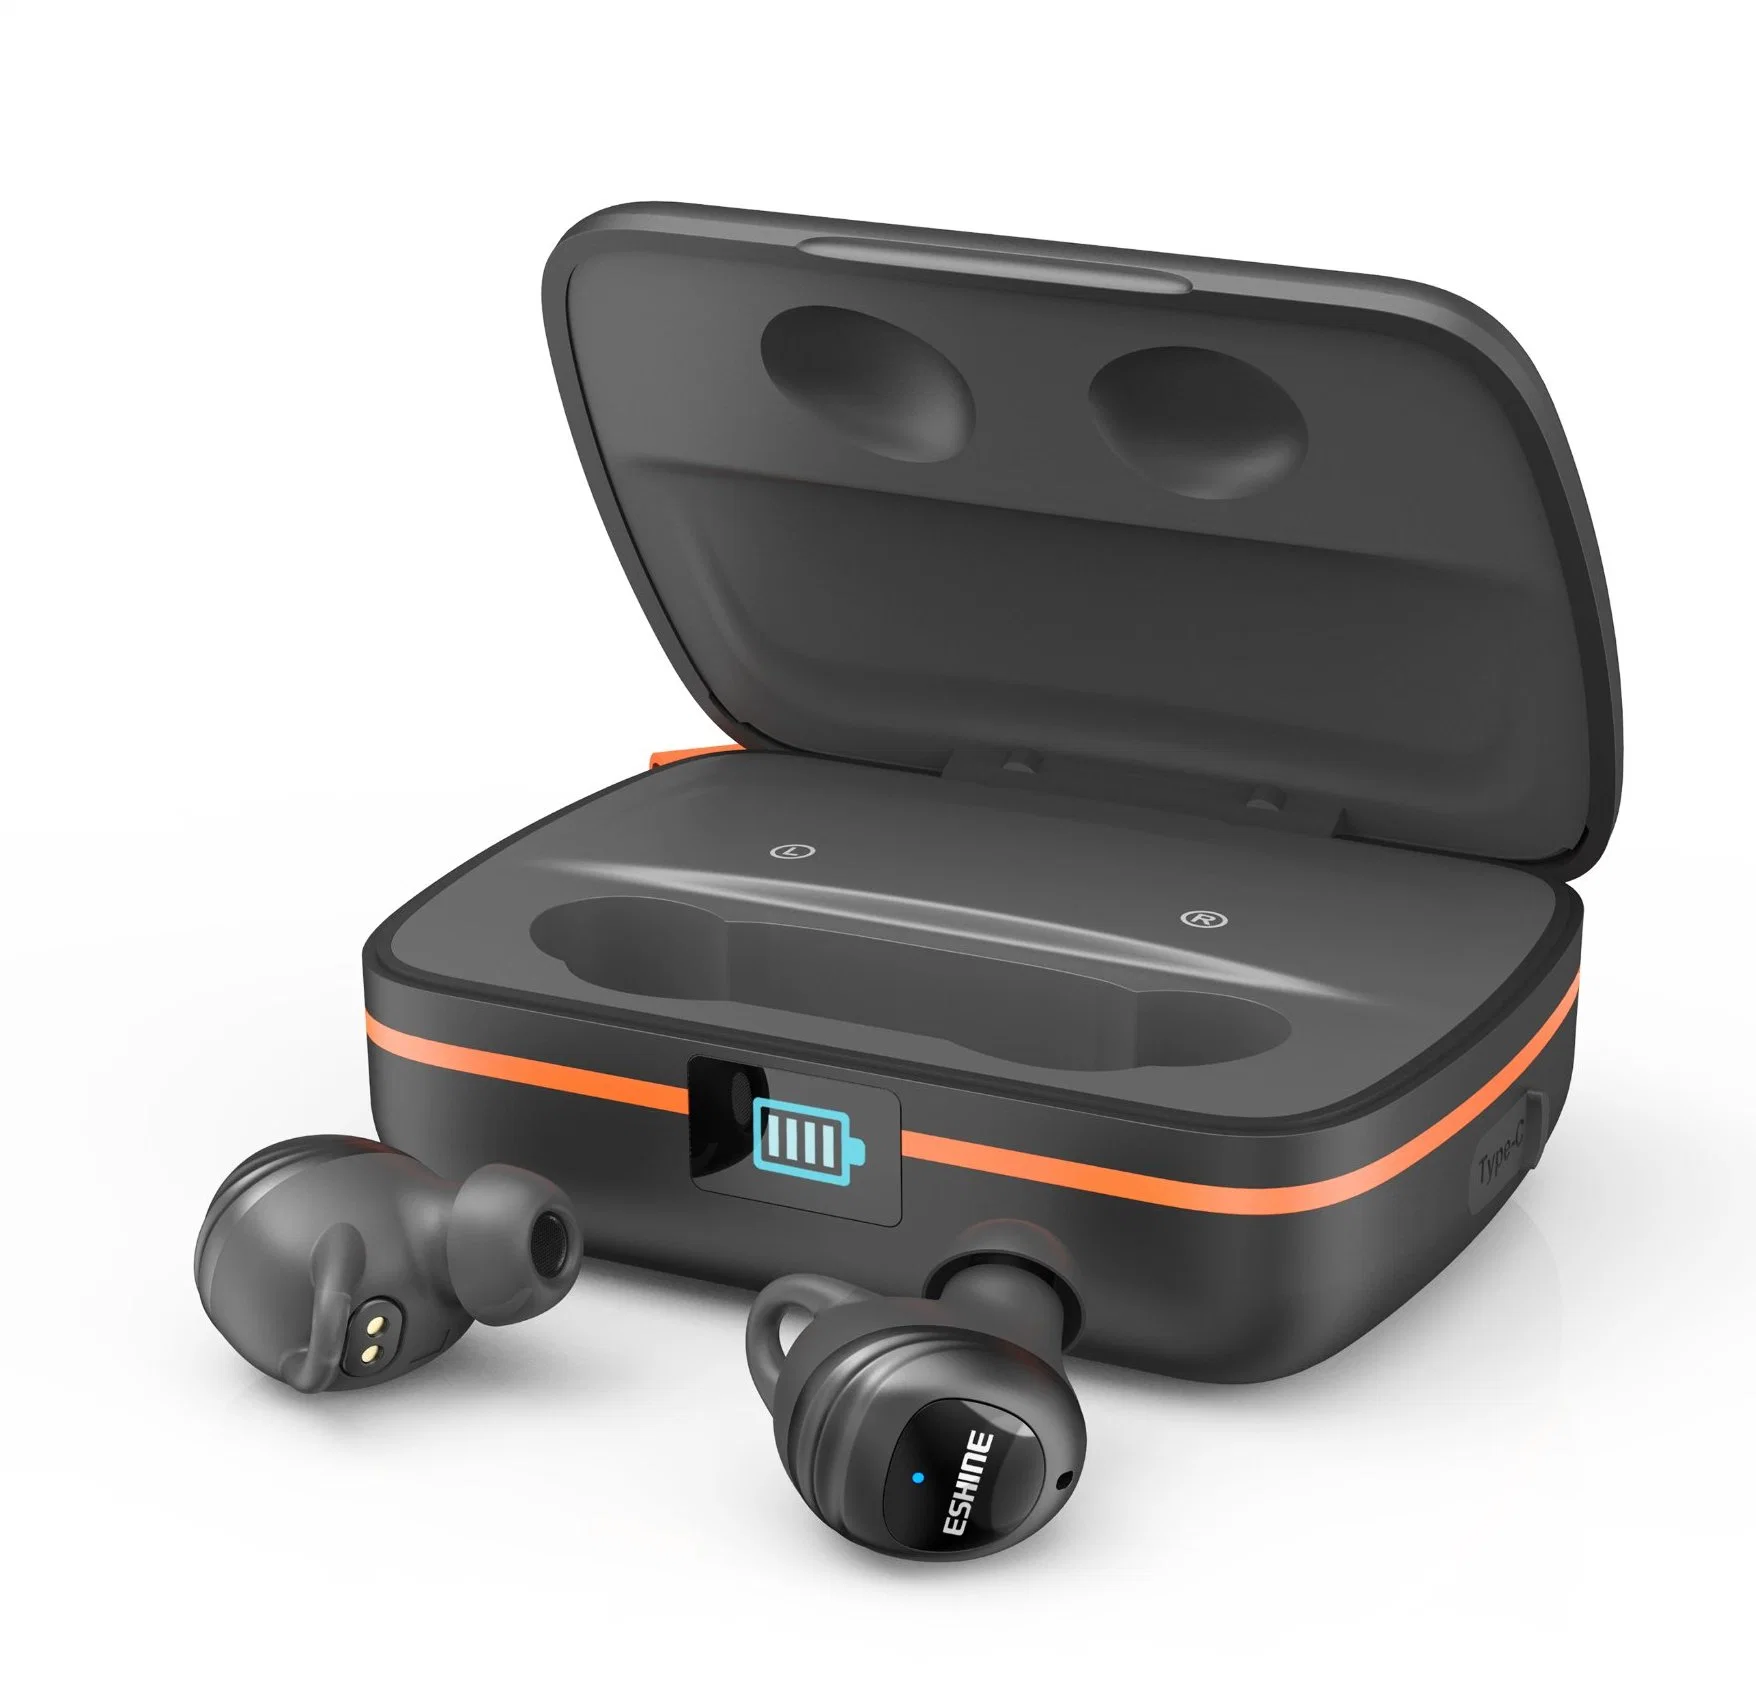 Proveedor de auriculares inalámbricos, auriculares Bluetooth Tws 5.0, impermeables IPX6, con estuche de carga solar para deporte y trabajo.